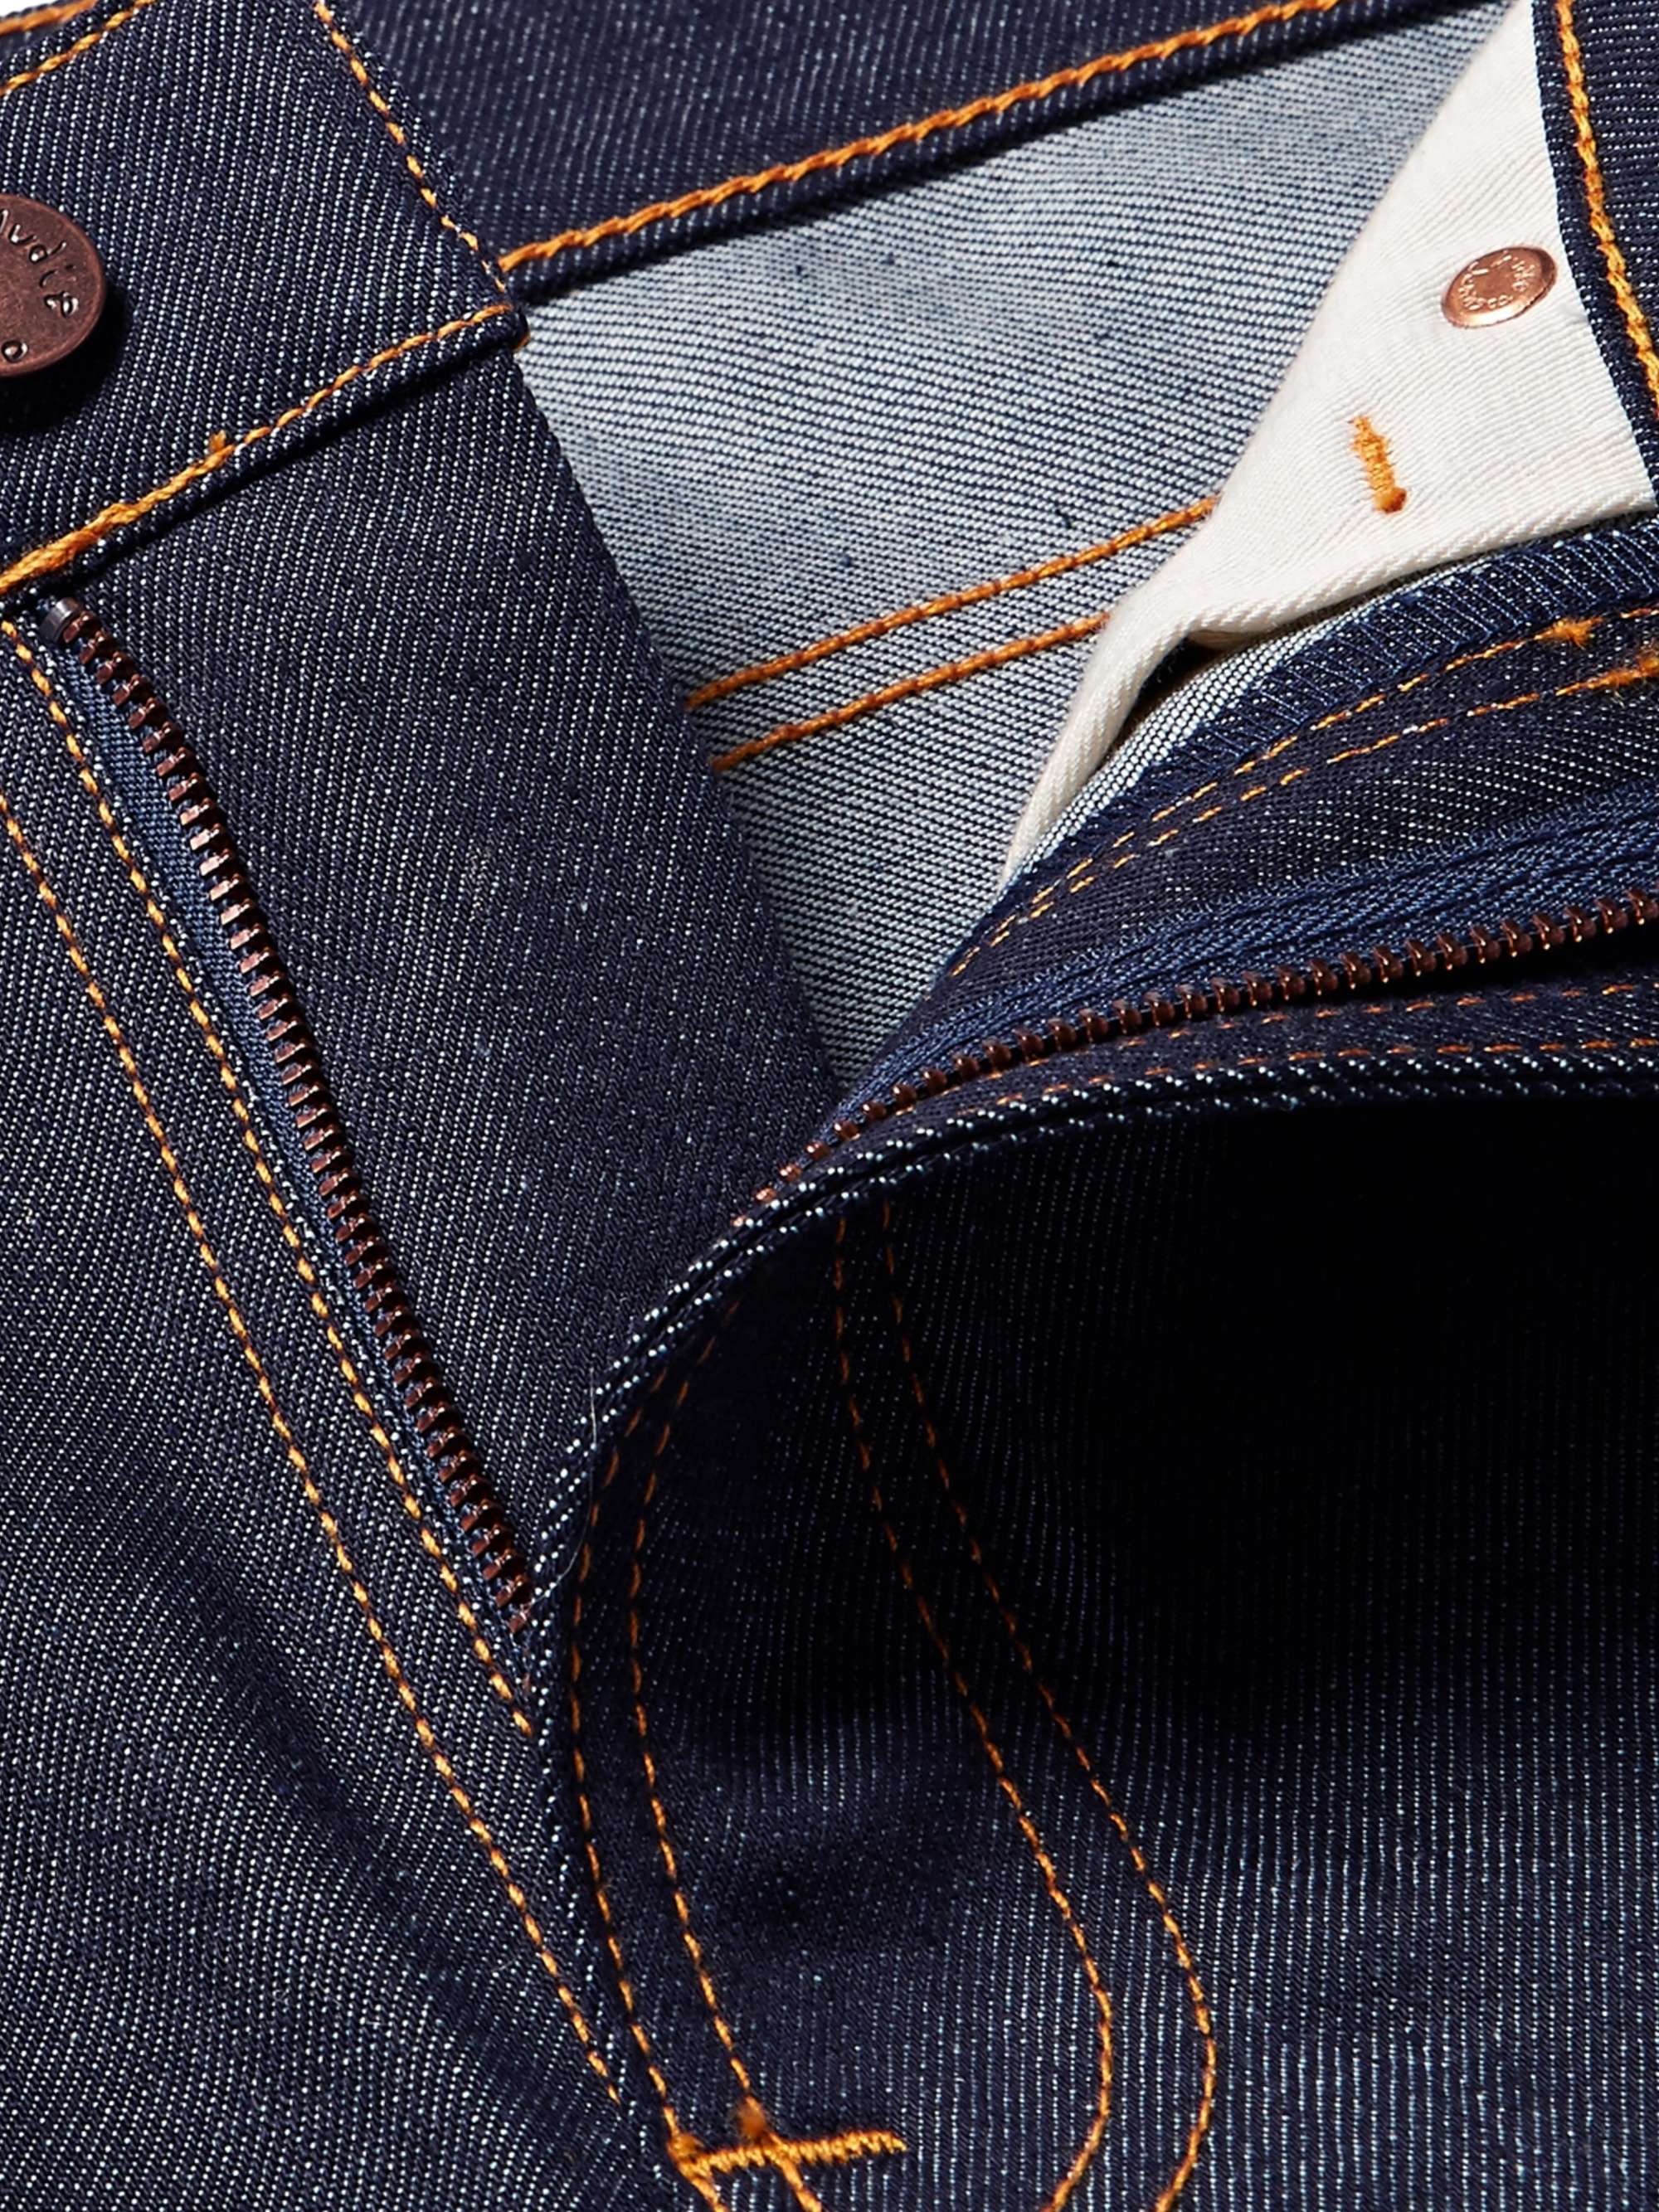 NUDIE JEANS Lean Dean Slim-Fit Dry Organic Denim Jeans | MR PORTER